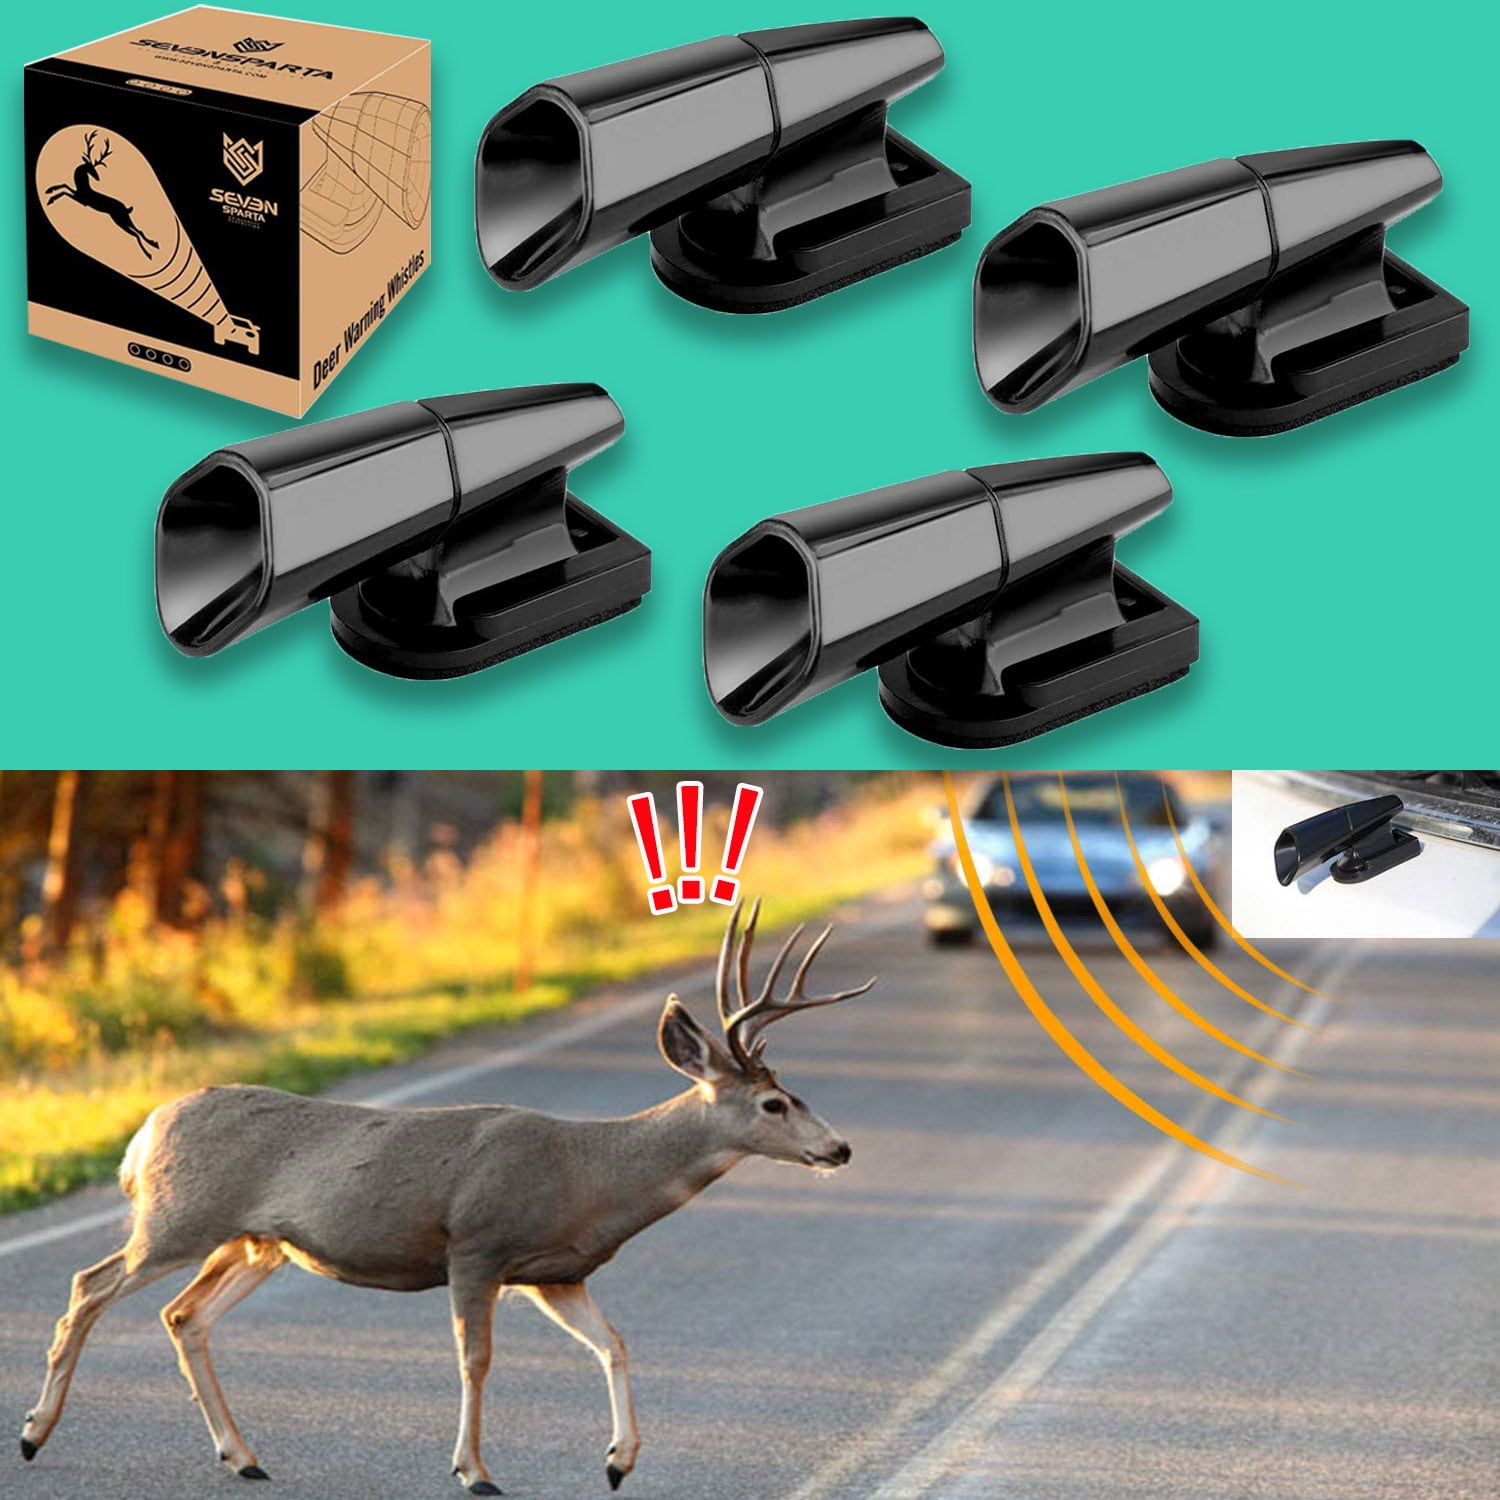 2PCS Ultrasonic Whistles Safety Sound Alarm Black Car Deer Animal Alert  Warning